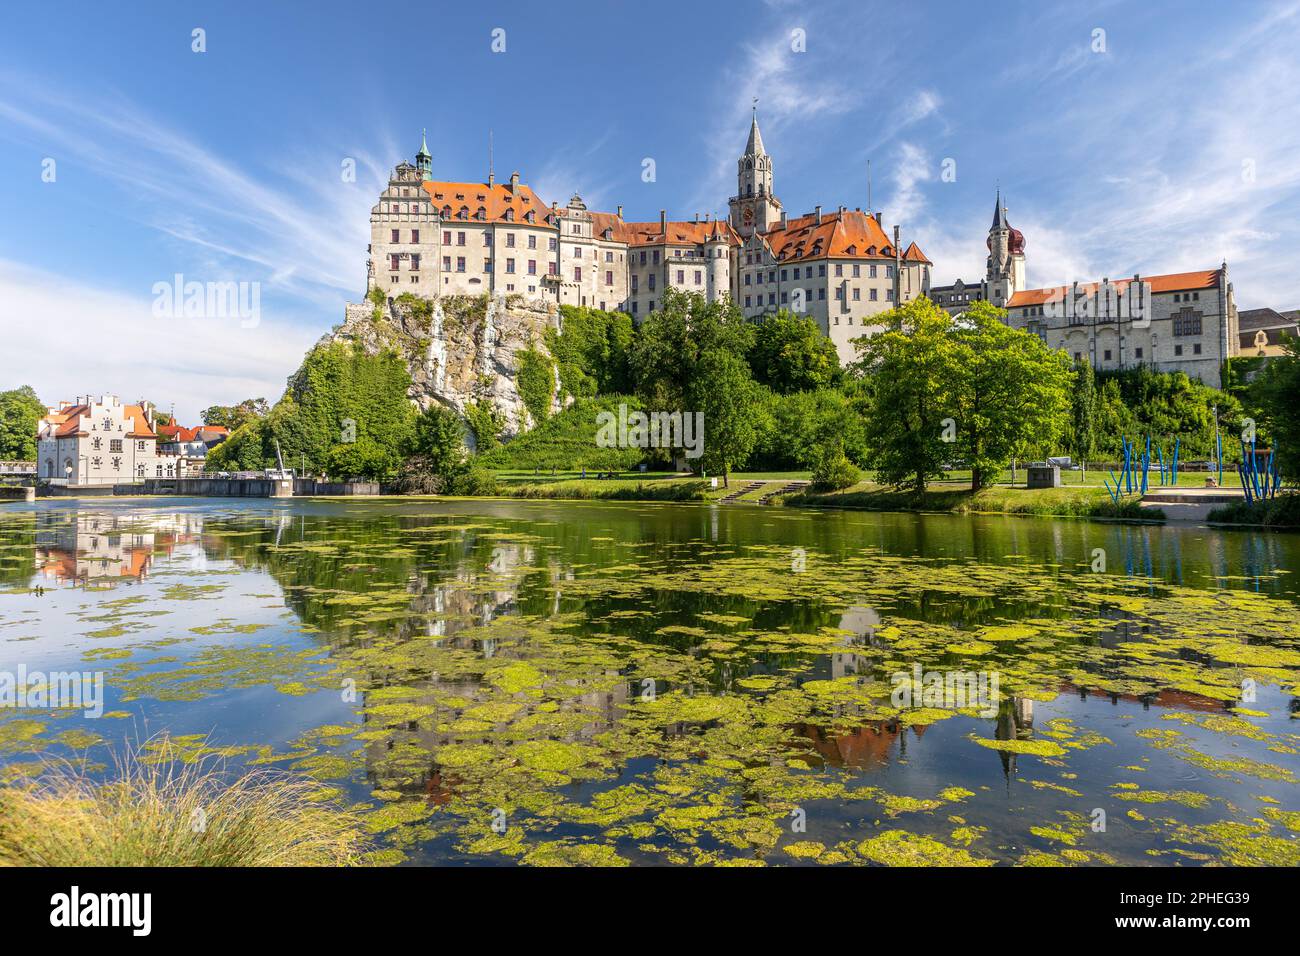 Sigmaringen castello medievale germania destinazione turistica punto di riferimento panoramico in estate con cielo blu e Danubio in primo piano Foto Stock